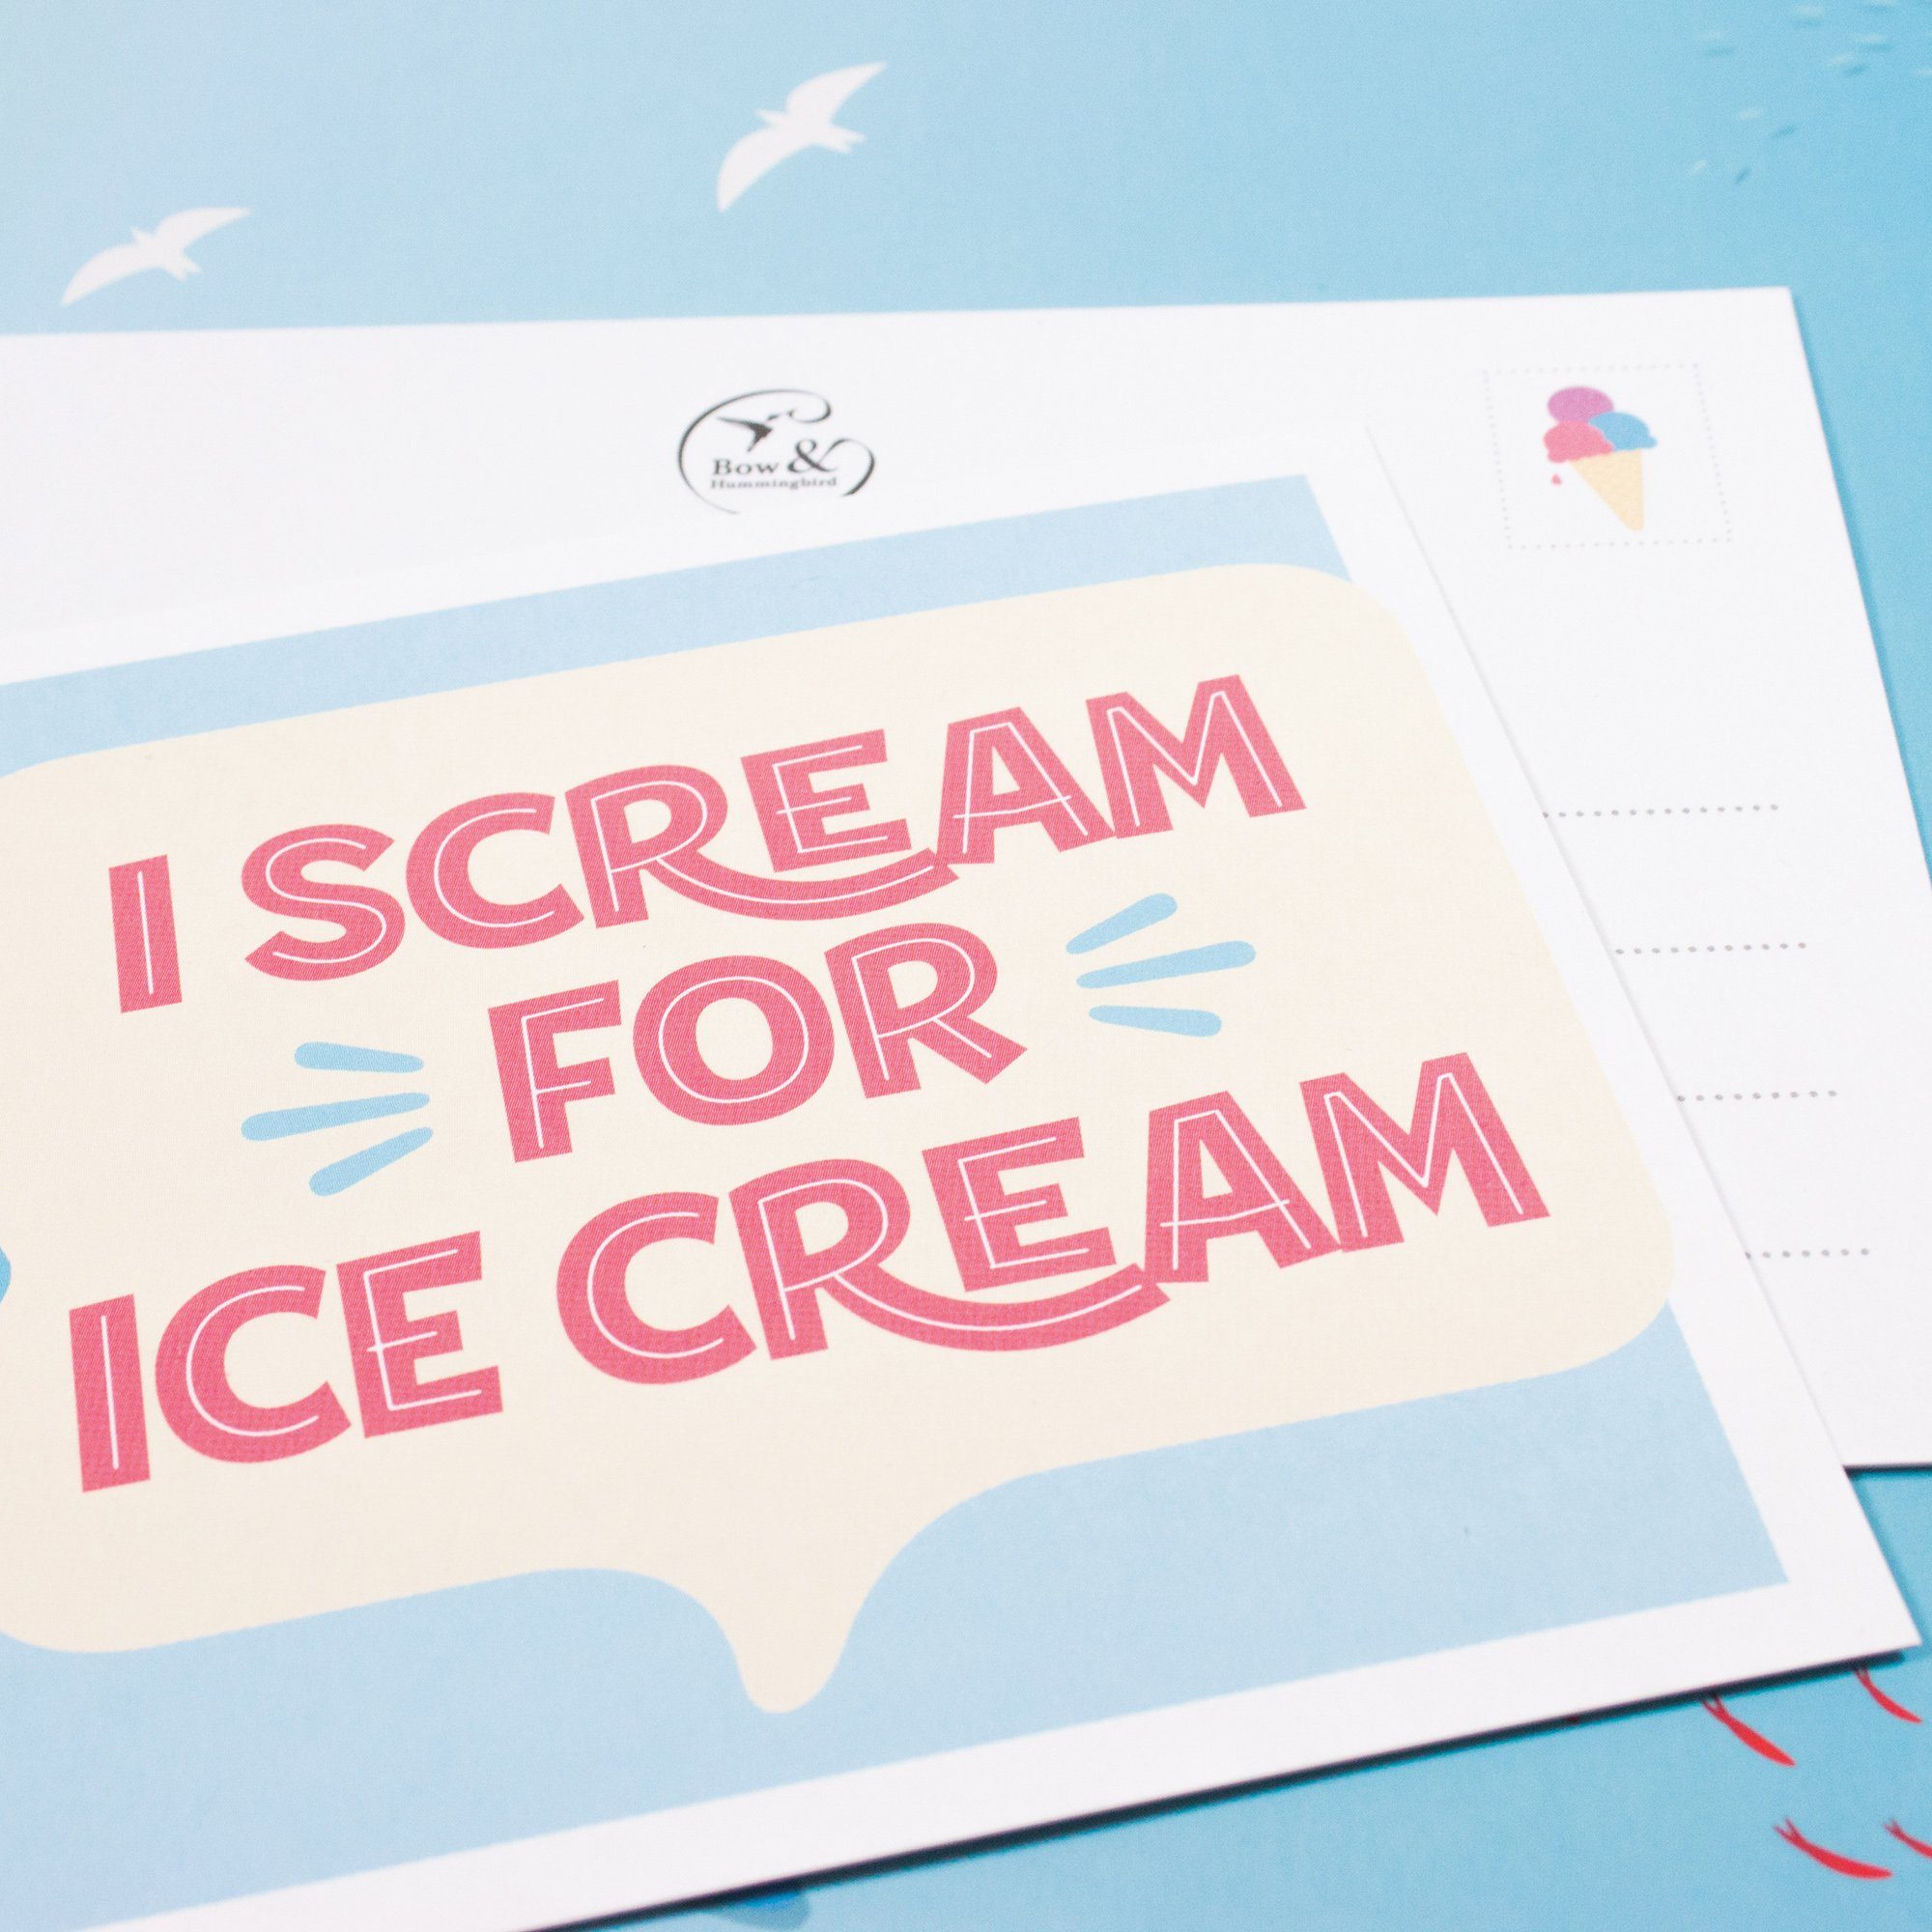 100 cream, I Hummingbird scream Bow for % Postkarte & ice Postkarte Recyclingpapier